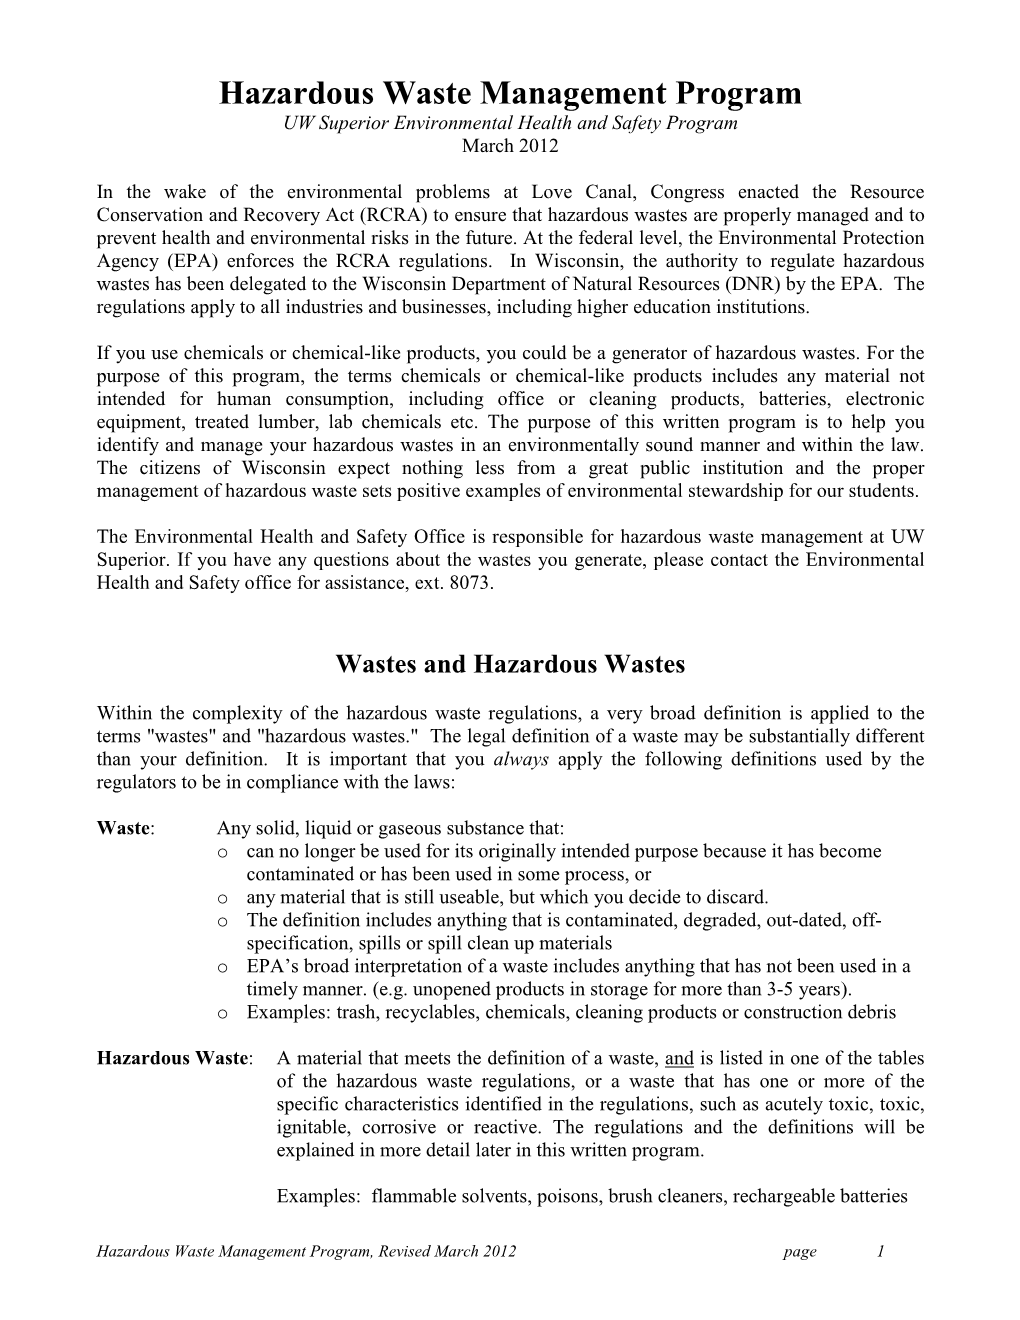 Hazardous Waste Management Program UW Superior Environmental Health and Safety Program March 2012